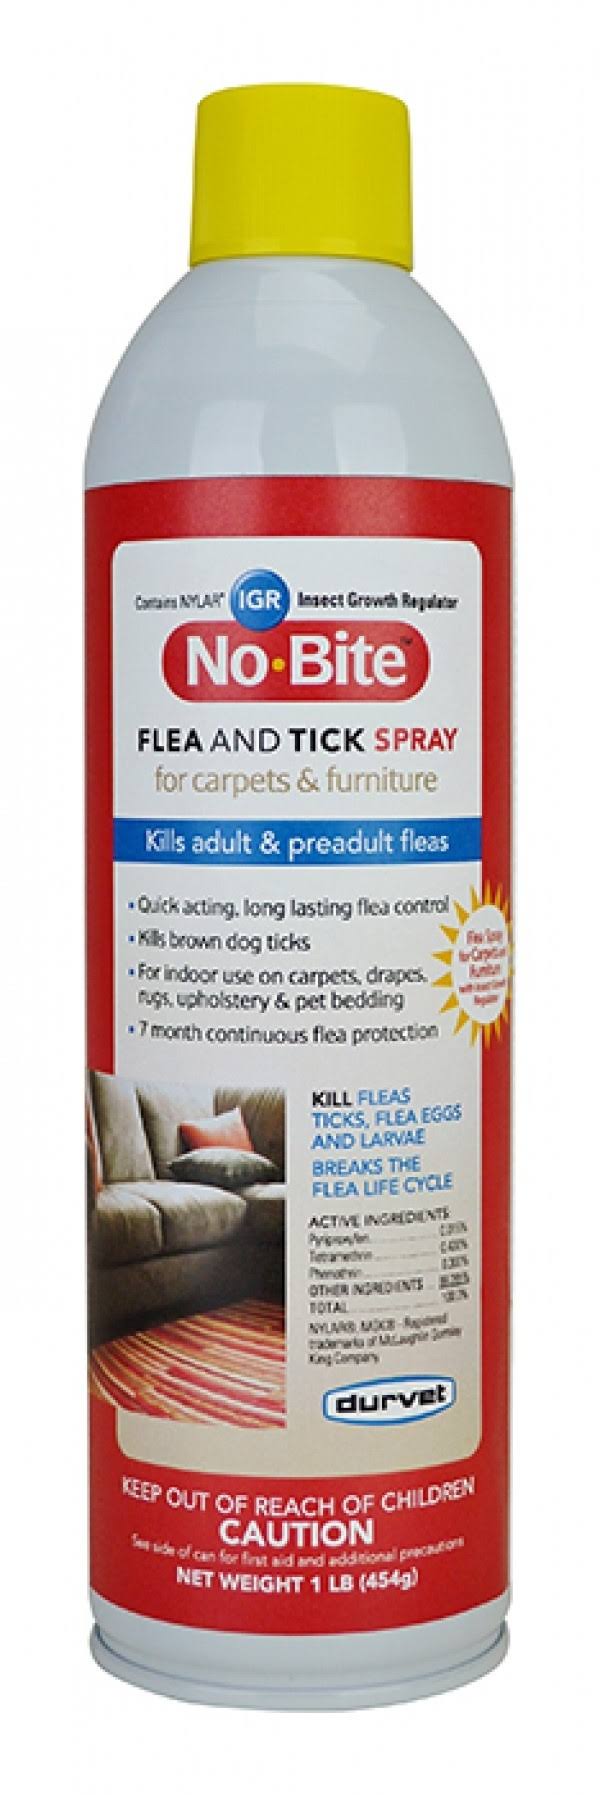 Durvet 011-1134 No Bite Flea and Tick House and Carpet Spray - 16 oz